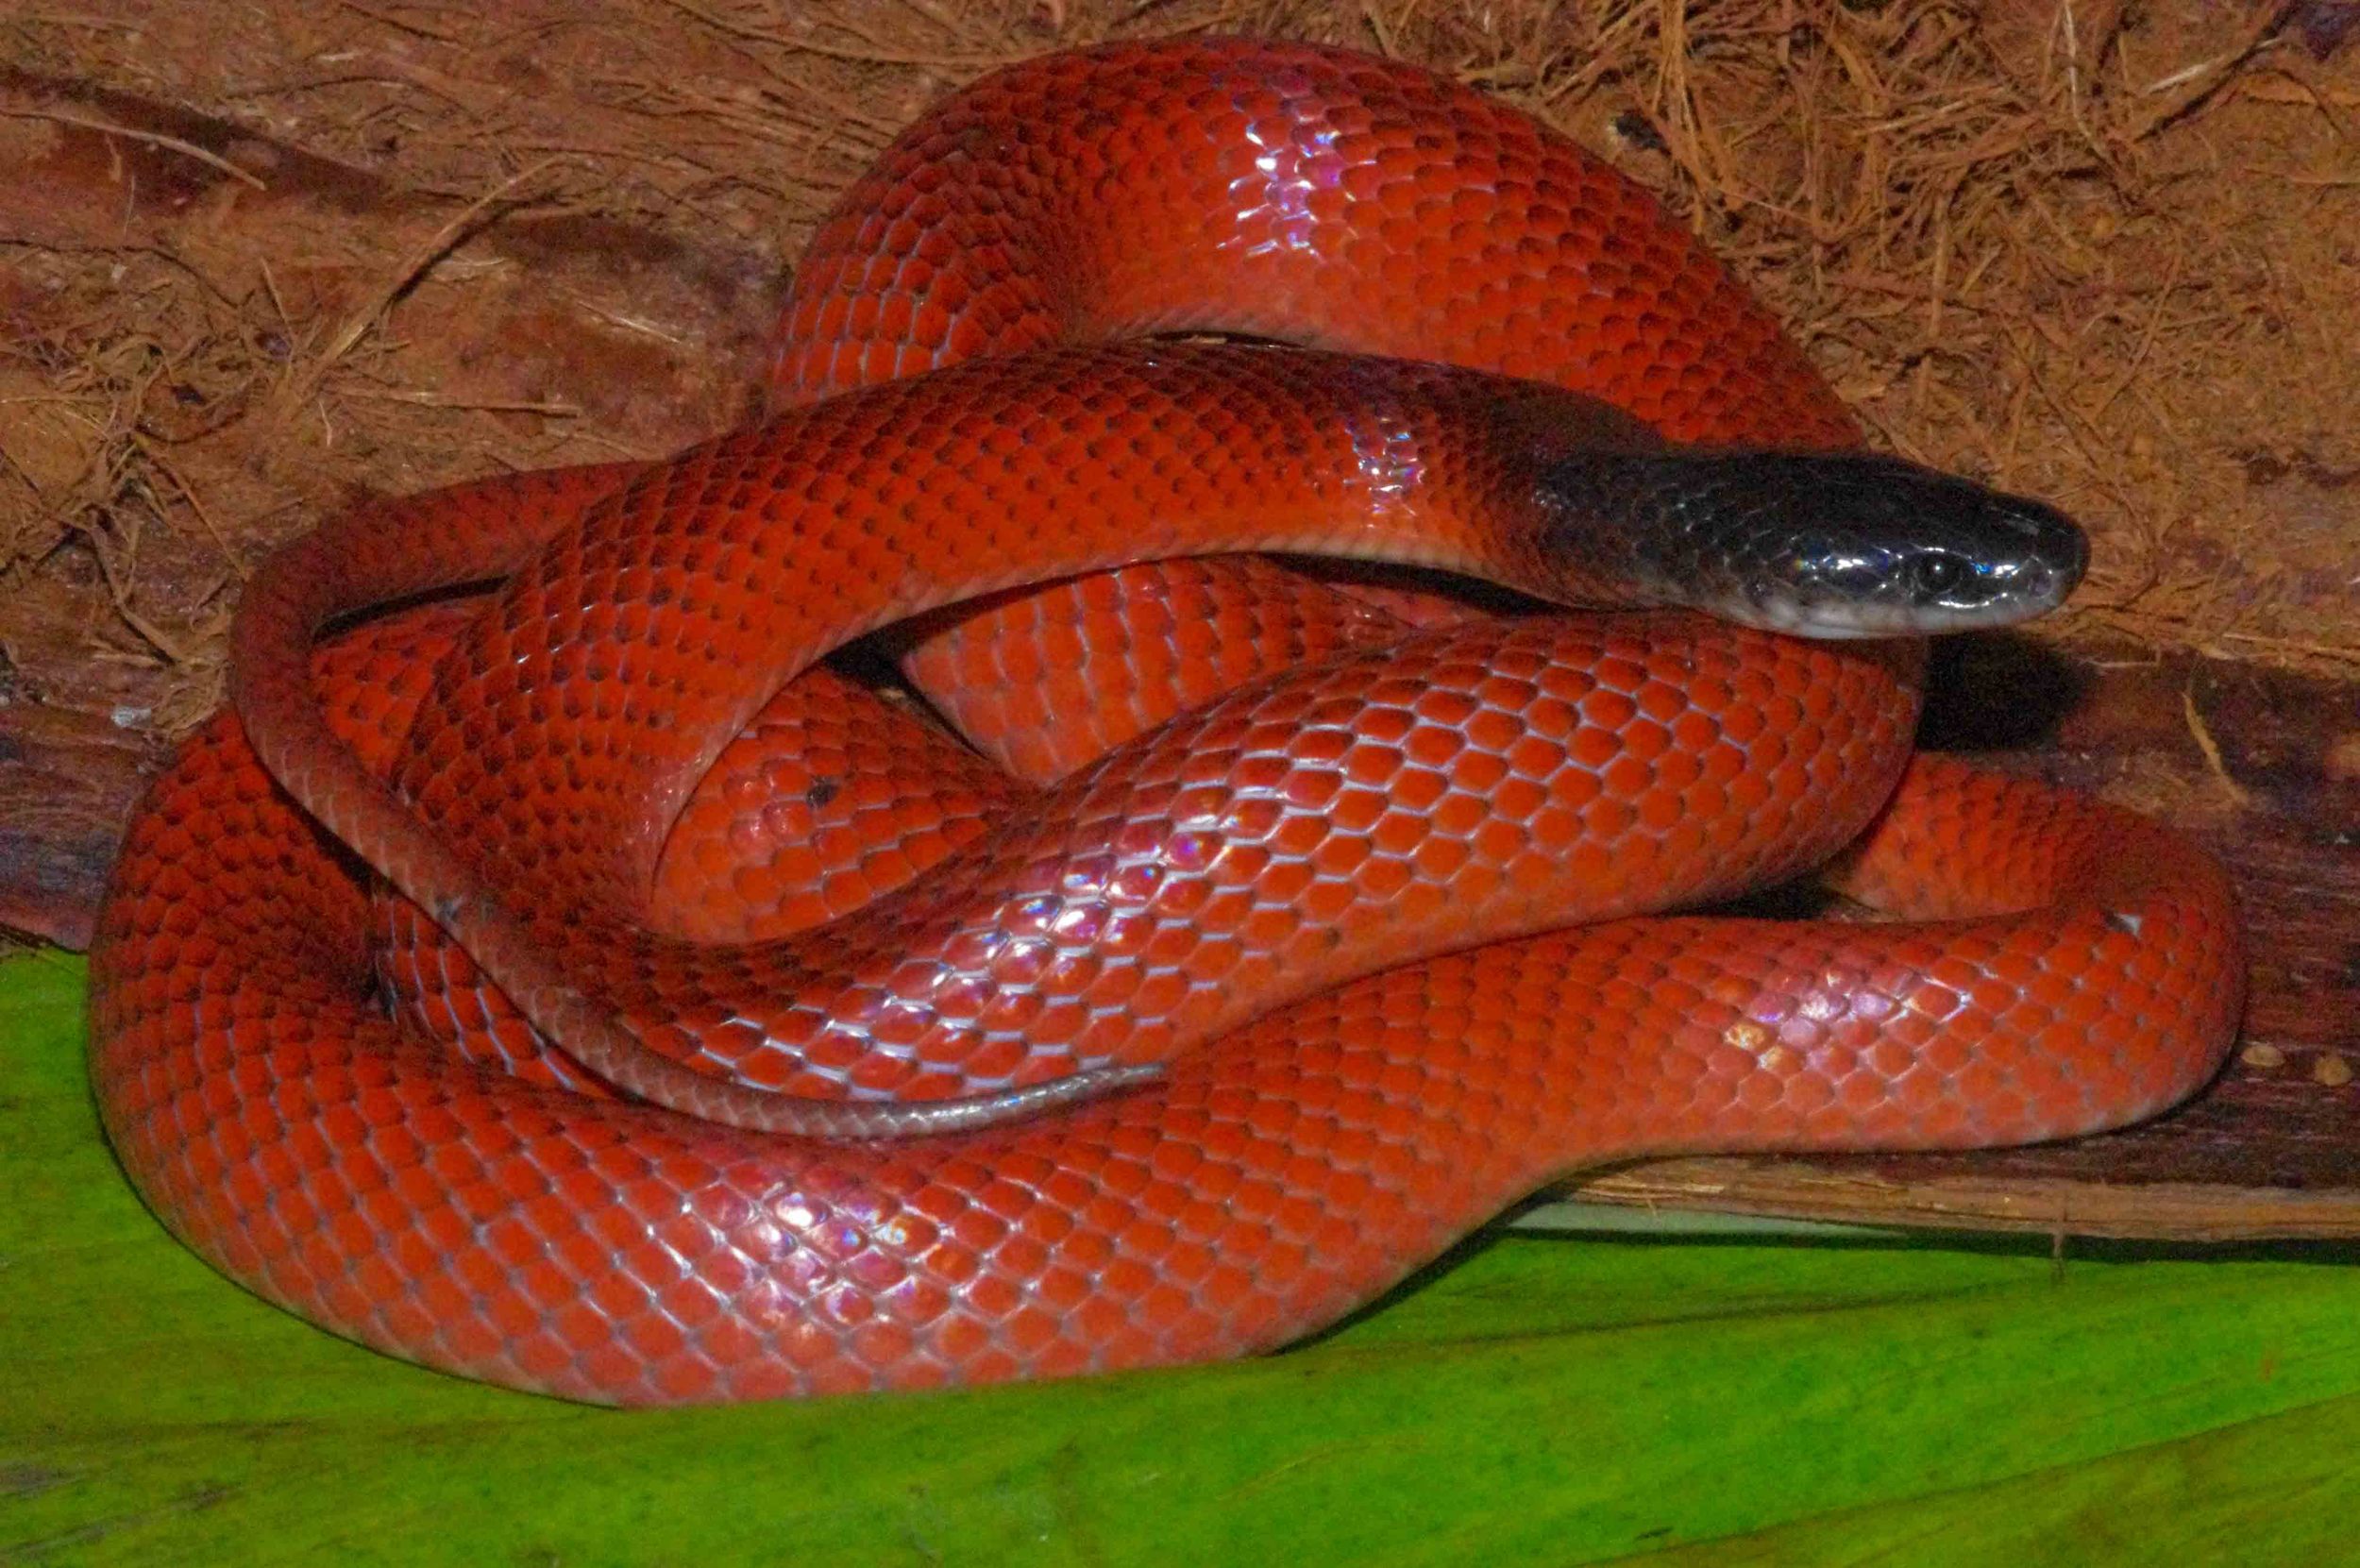 Pseudoboa coronata, Amazon Scarlet Snake (Photo by Matt Cage)